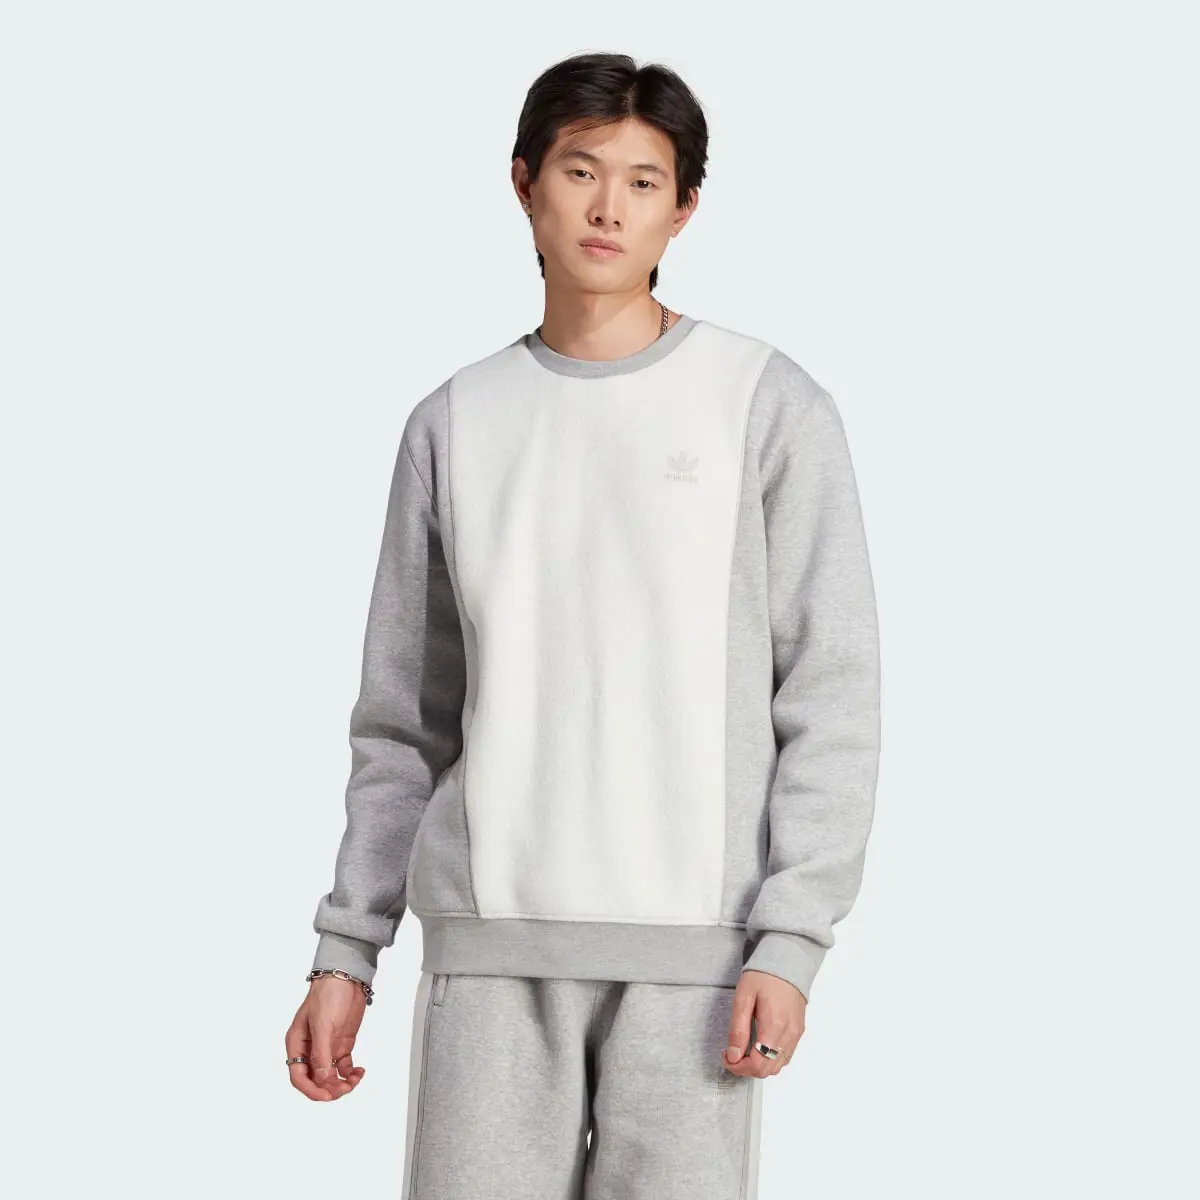 Adidas Essentials+ Trefoil Reverse Material Crew Sweatshirt. 2